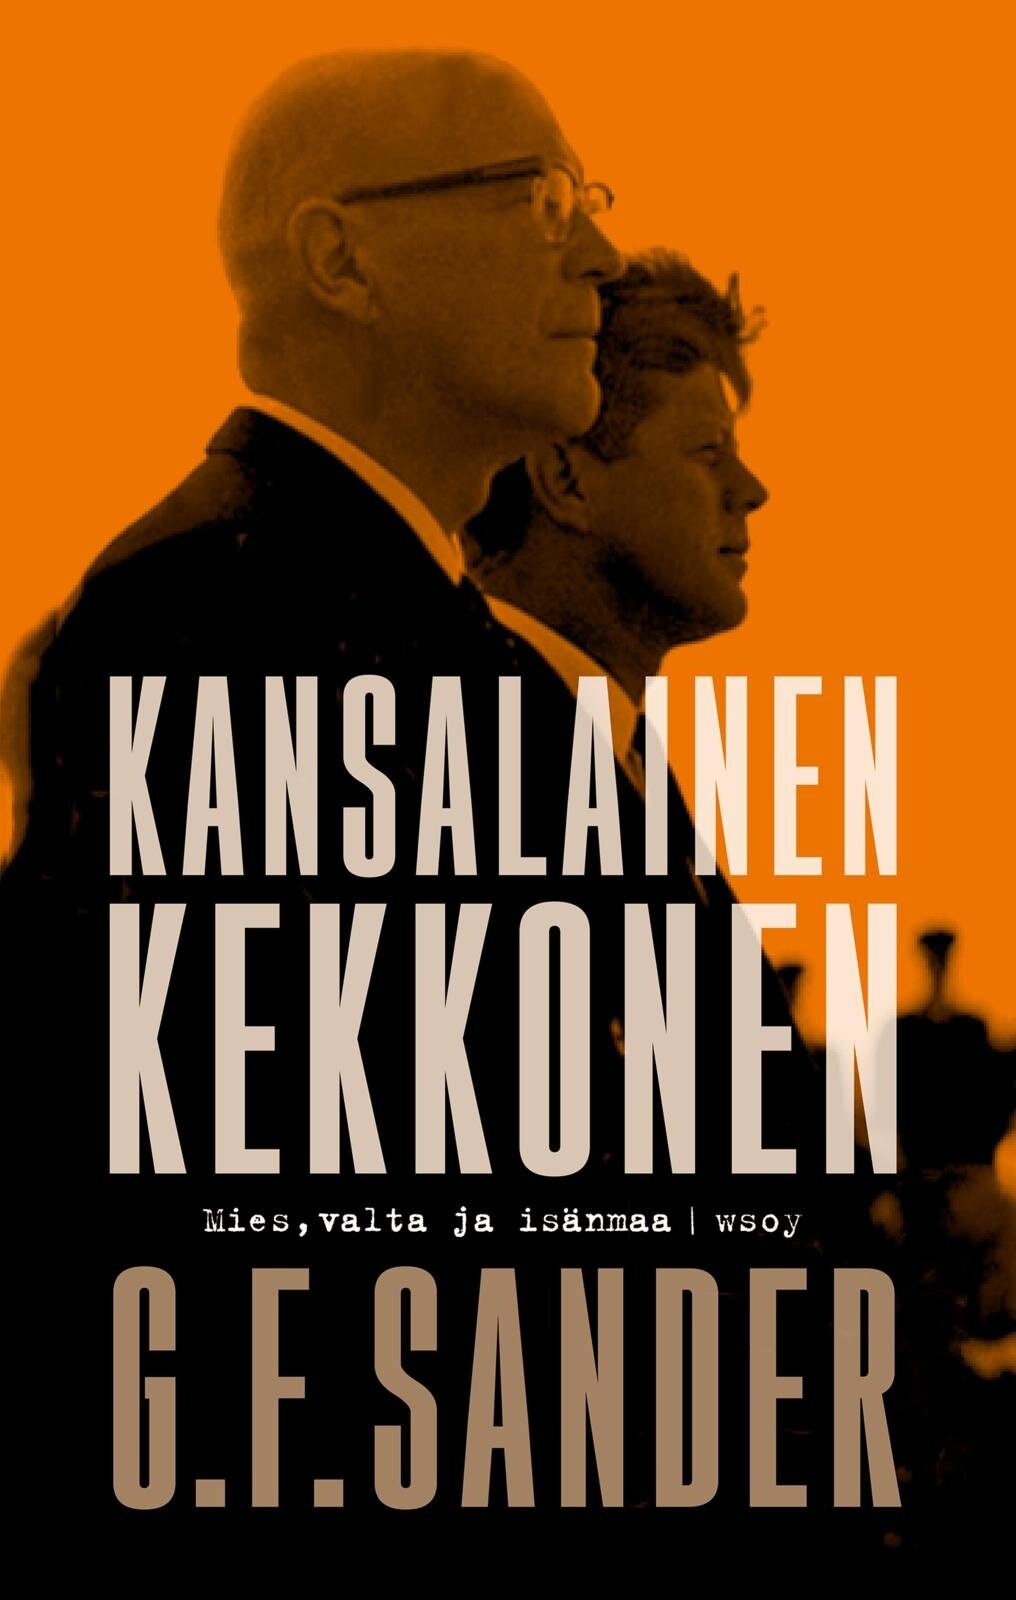 CITIZEN KEKKONEN: Urho Kekkonen and his times, 2020 (coming out this fall)